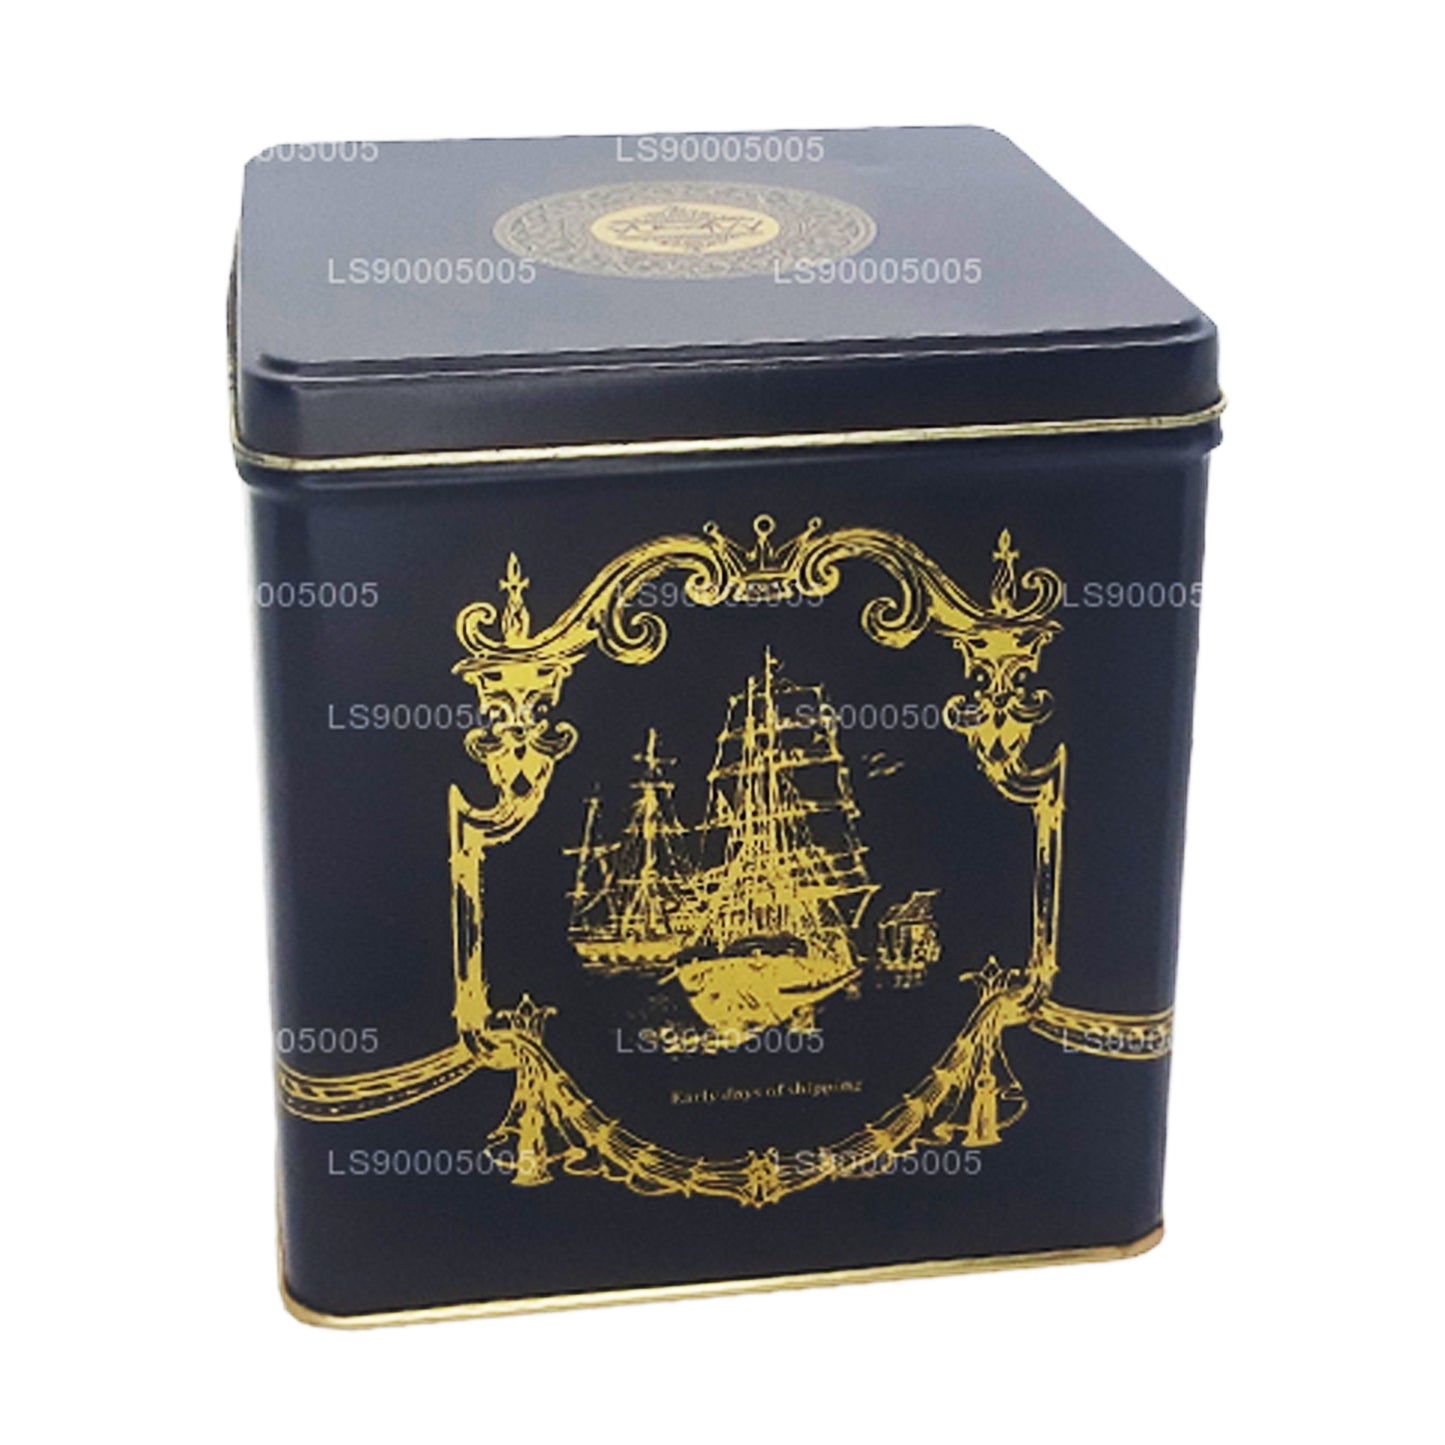 Листовой чай Mlesna Victorian Blend OP, черный металлический контейнер